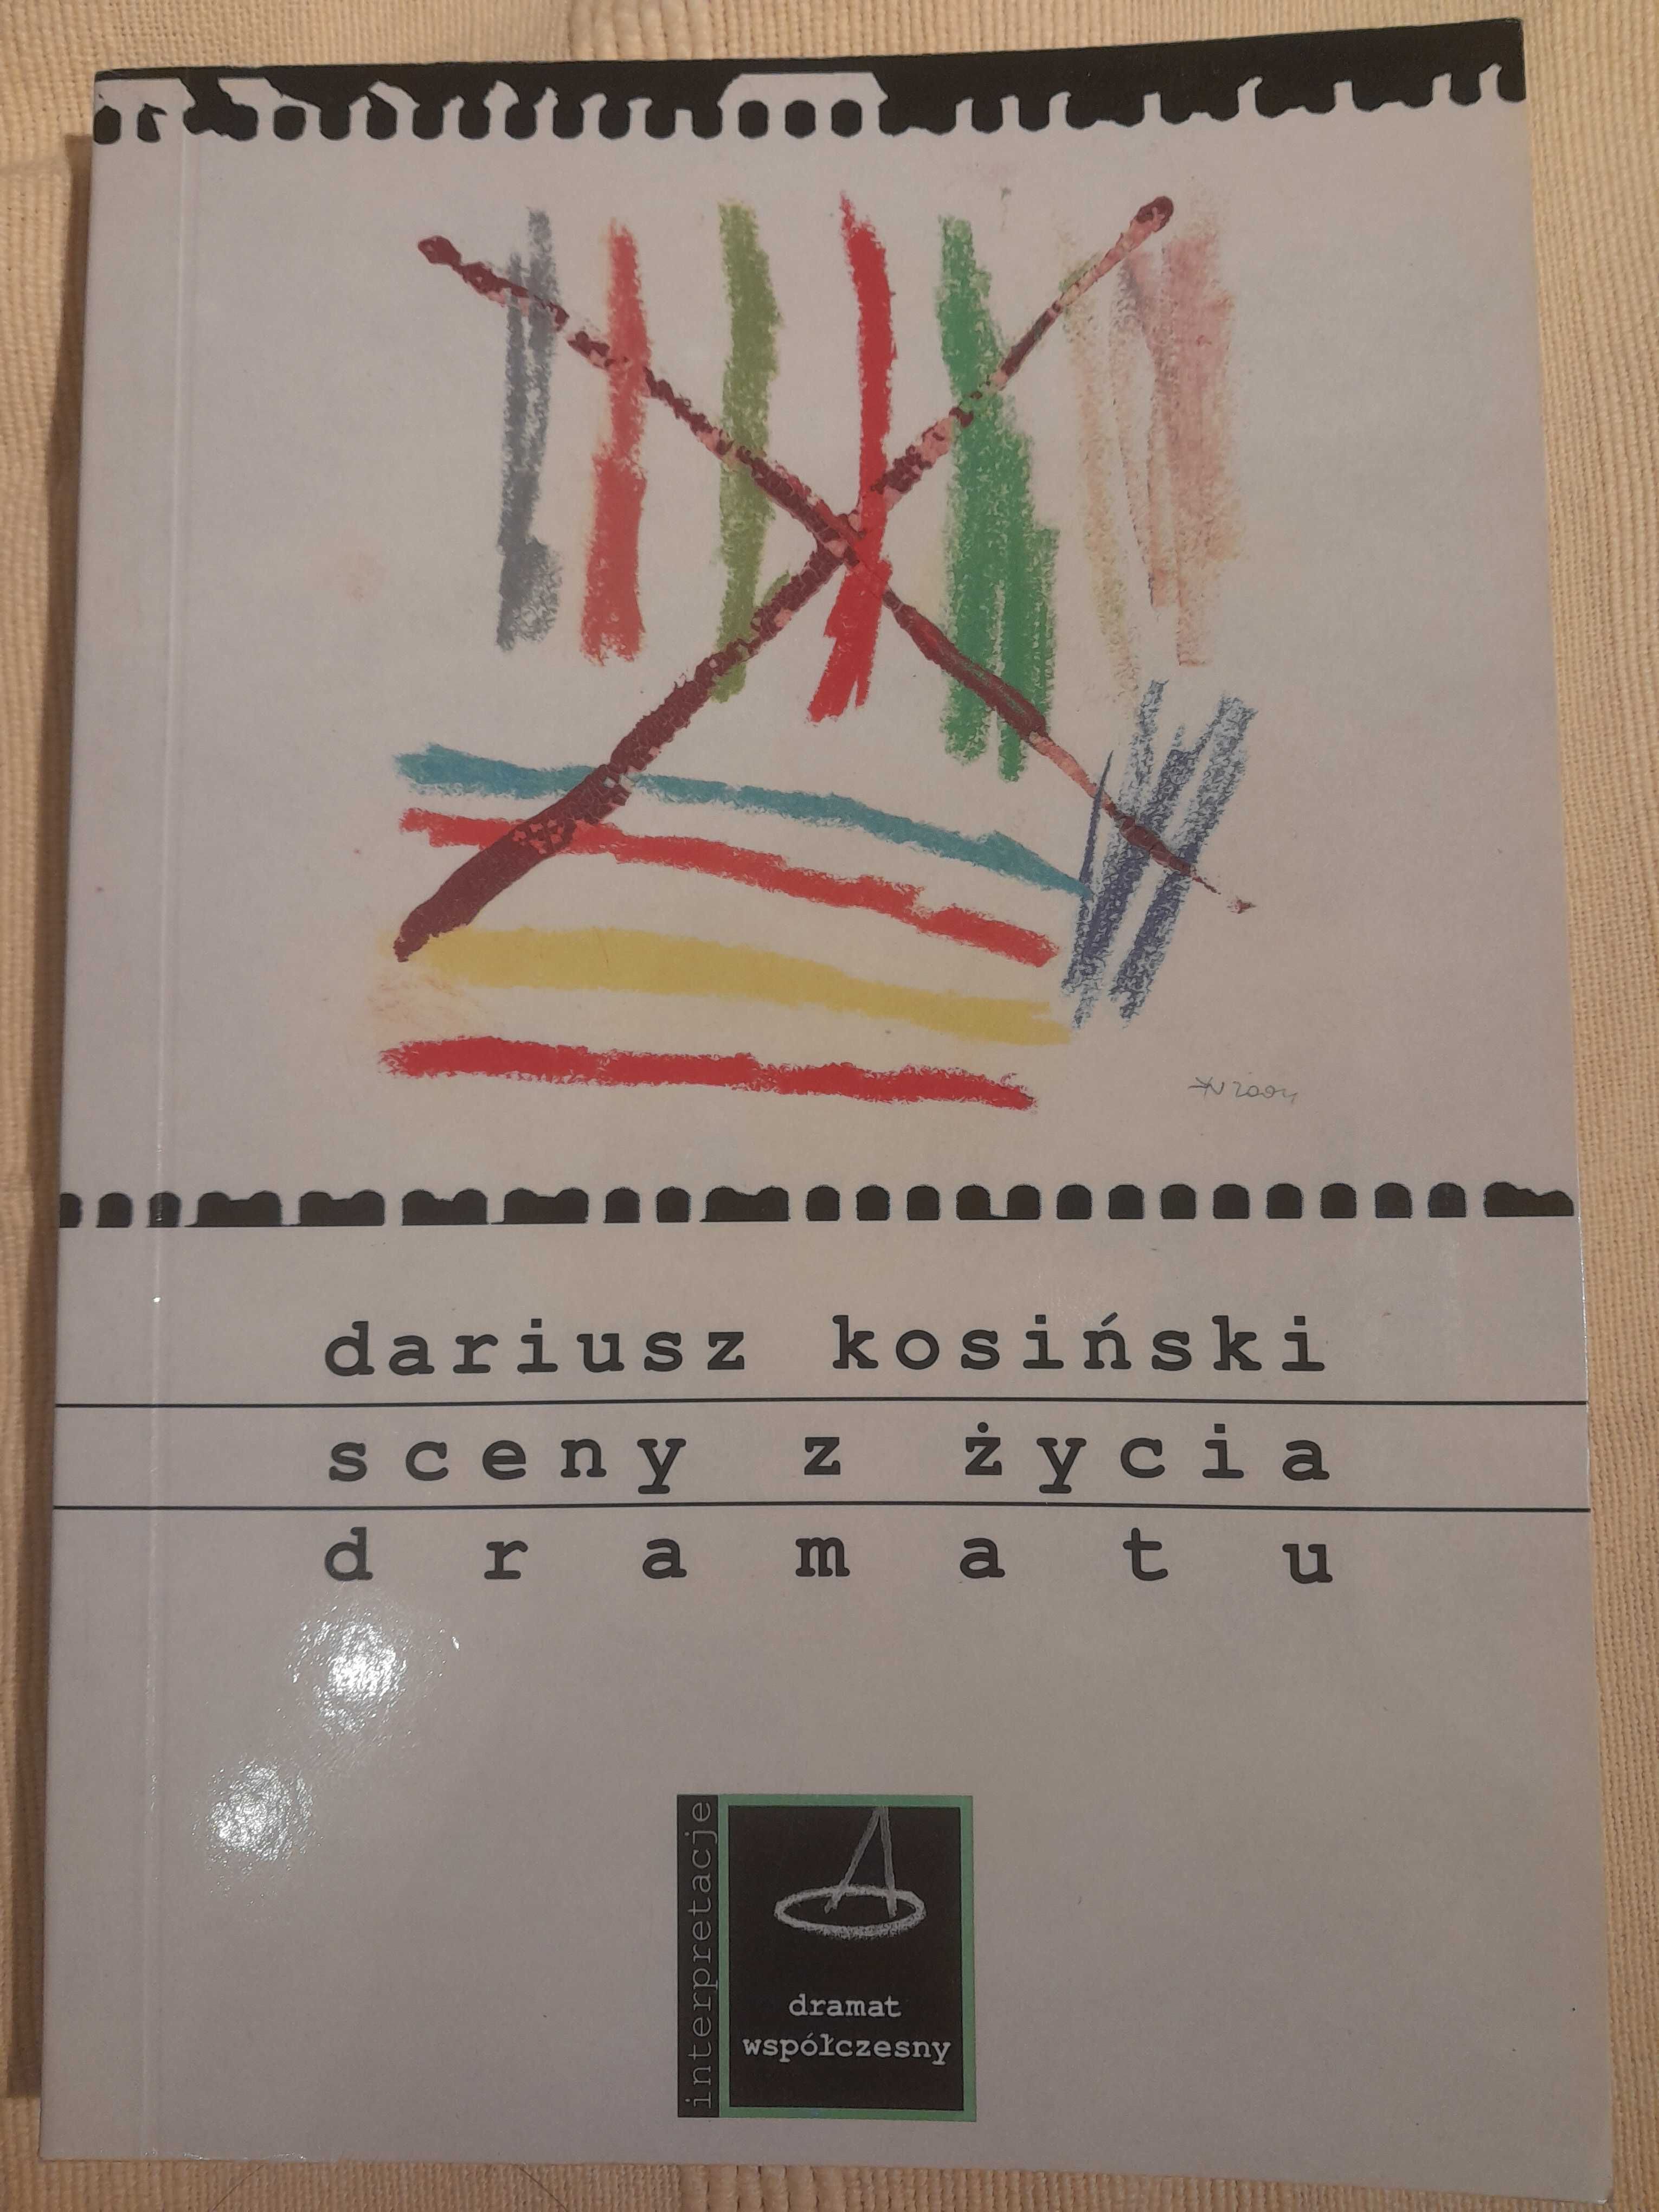 Sceny z życia dramatu Dariusz Kosiński